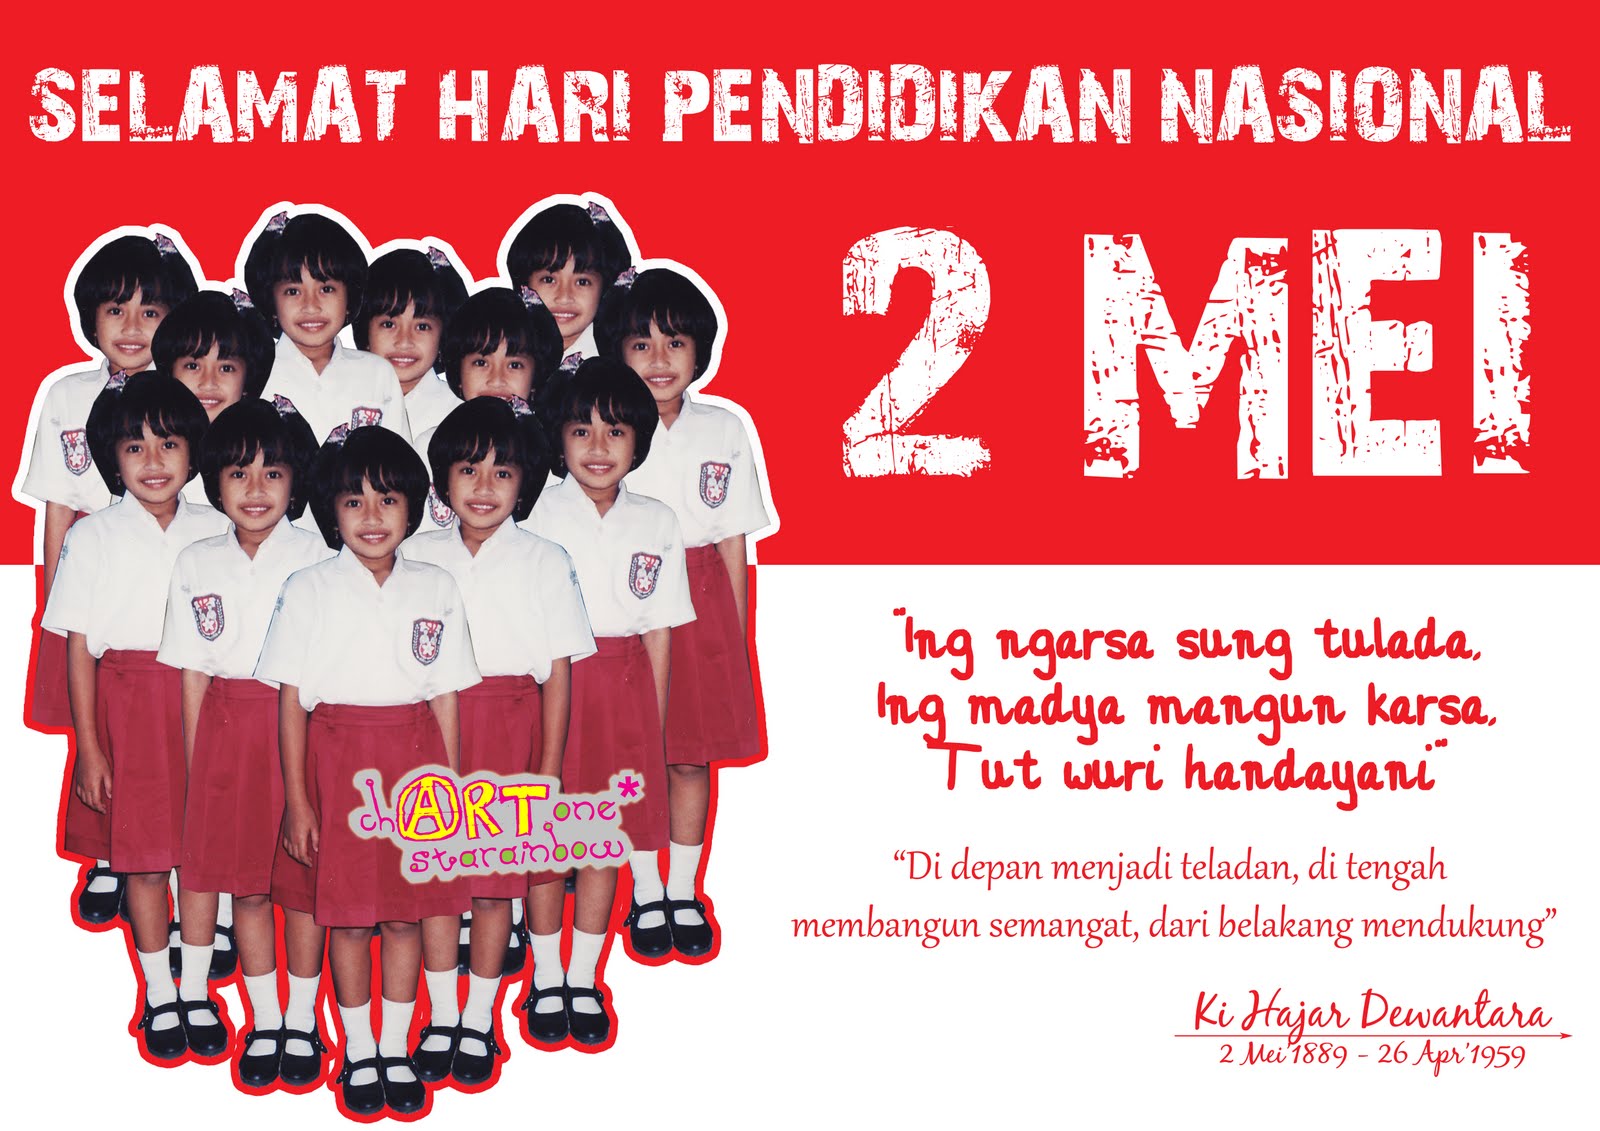 Selamat Hari Pendidikan Nasional Les Privat Bandung